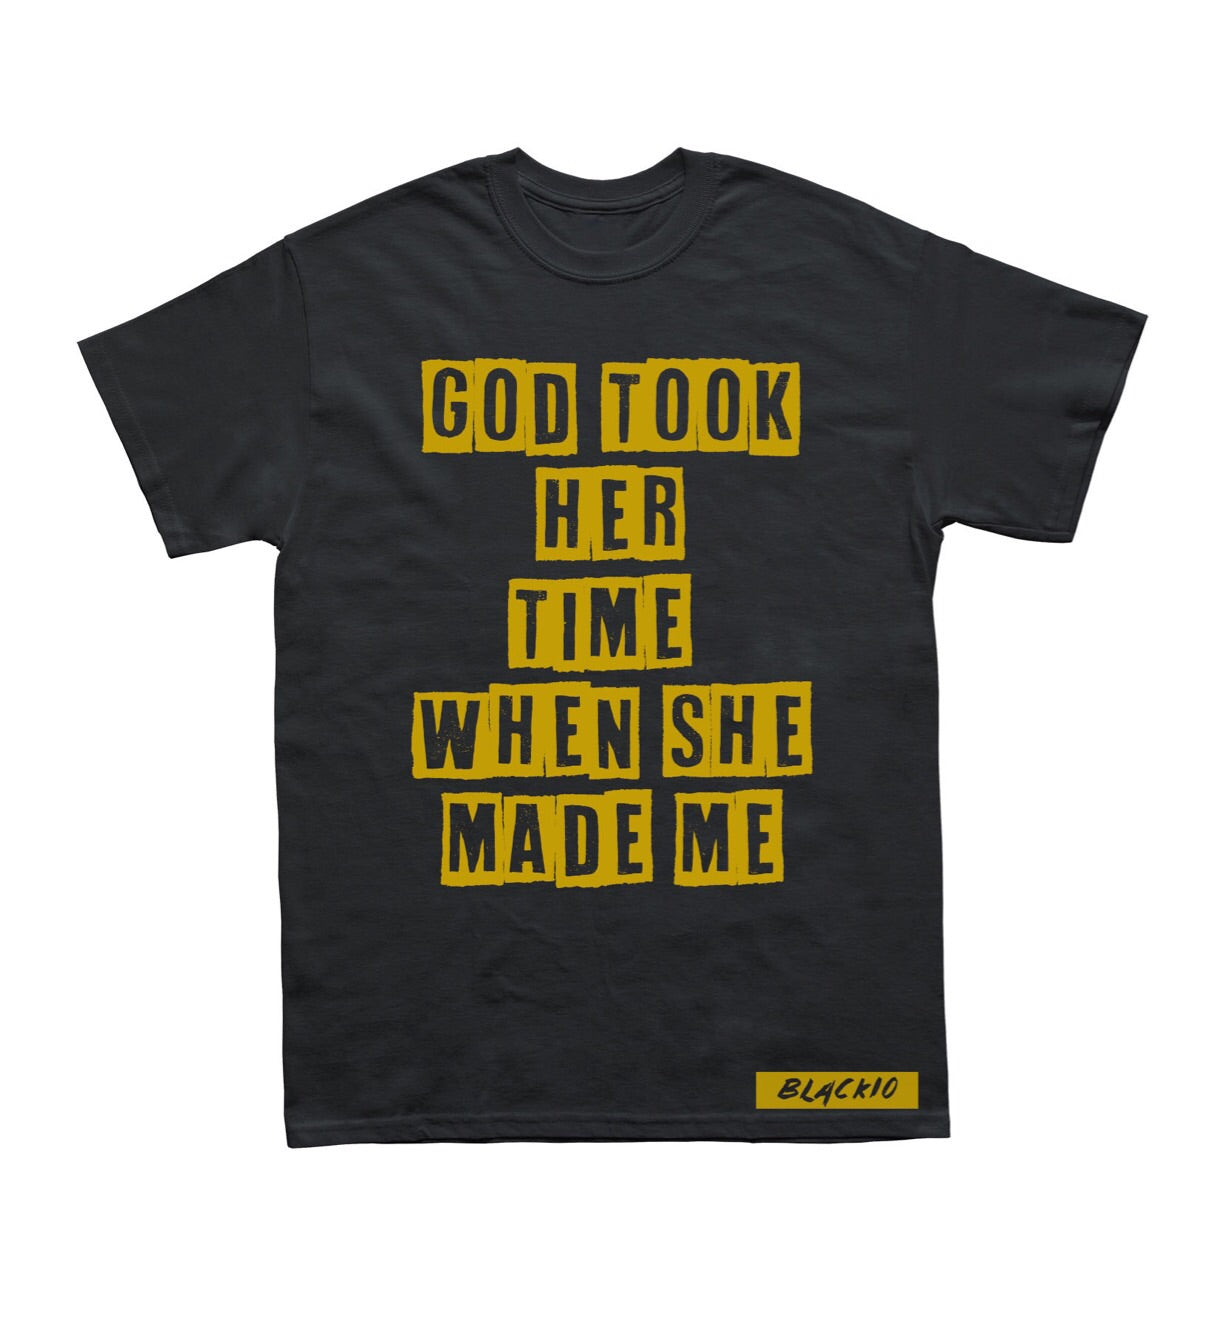 God Took Her Time Shirt - Black10.com